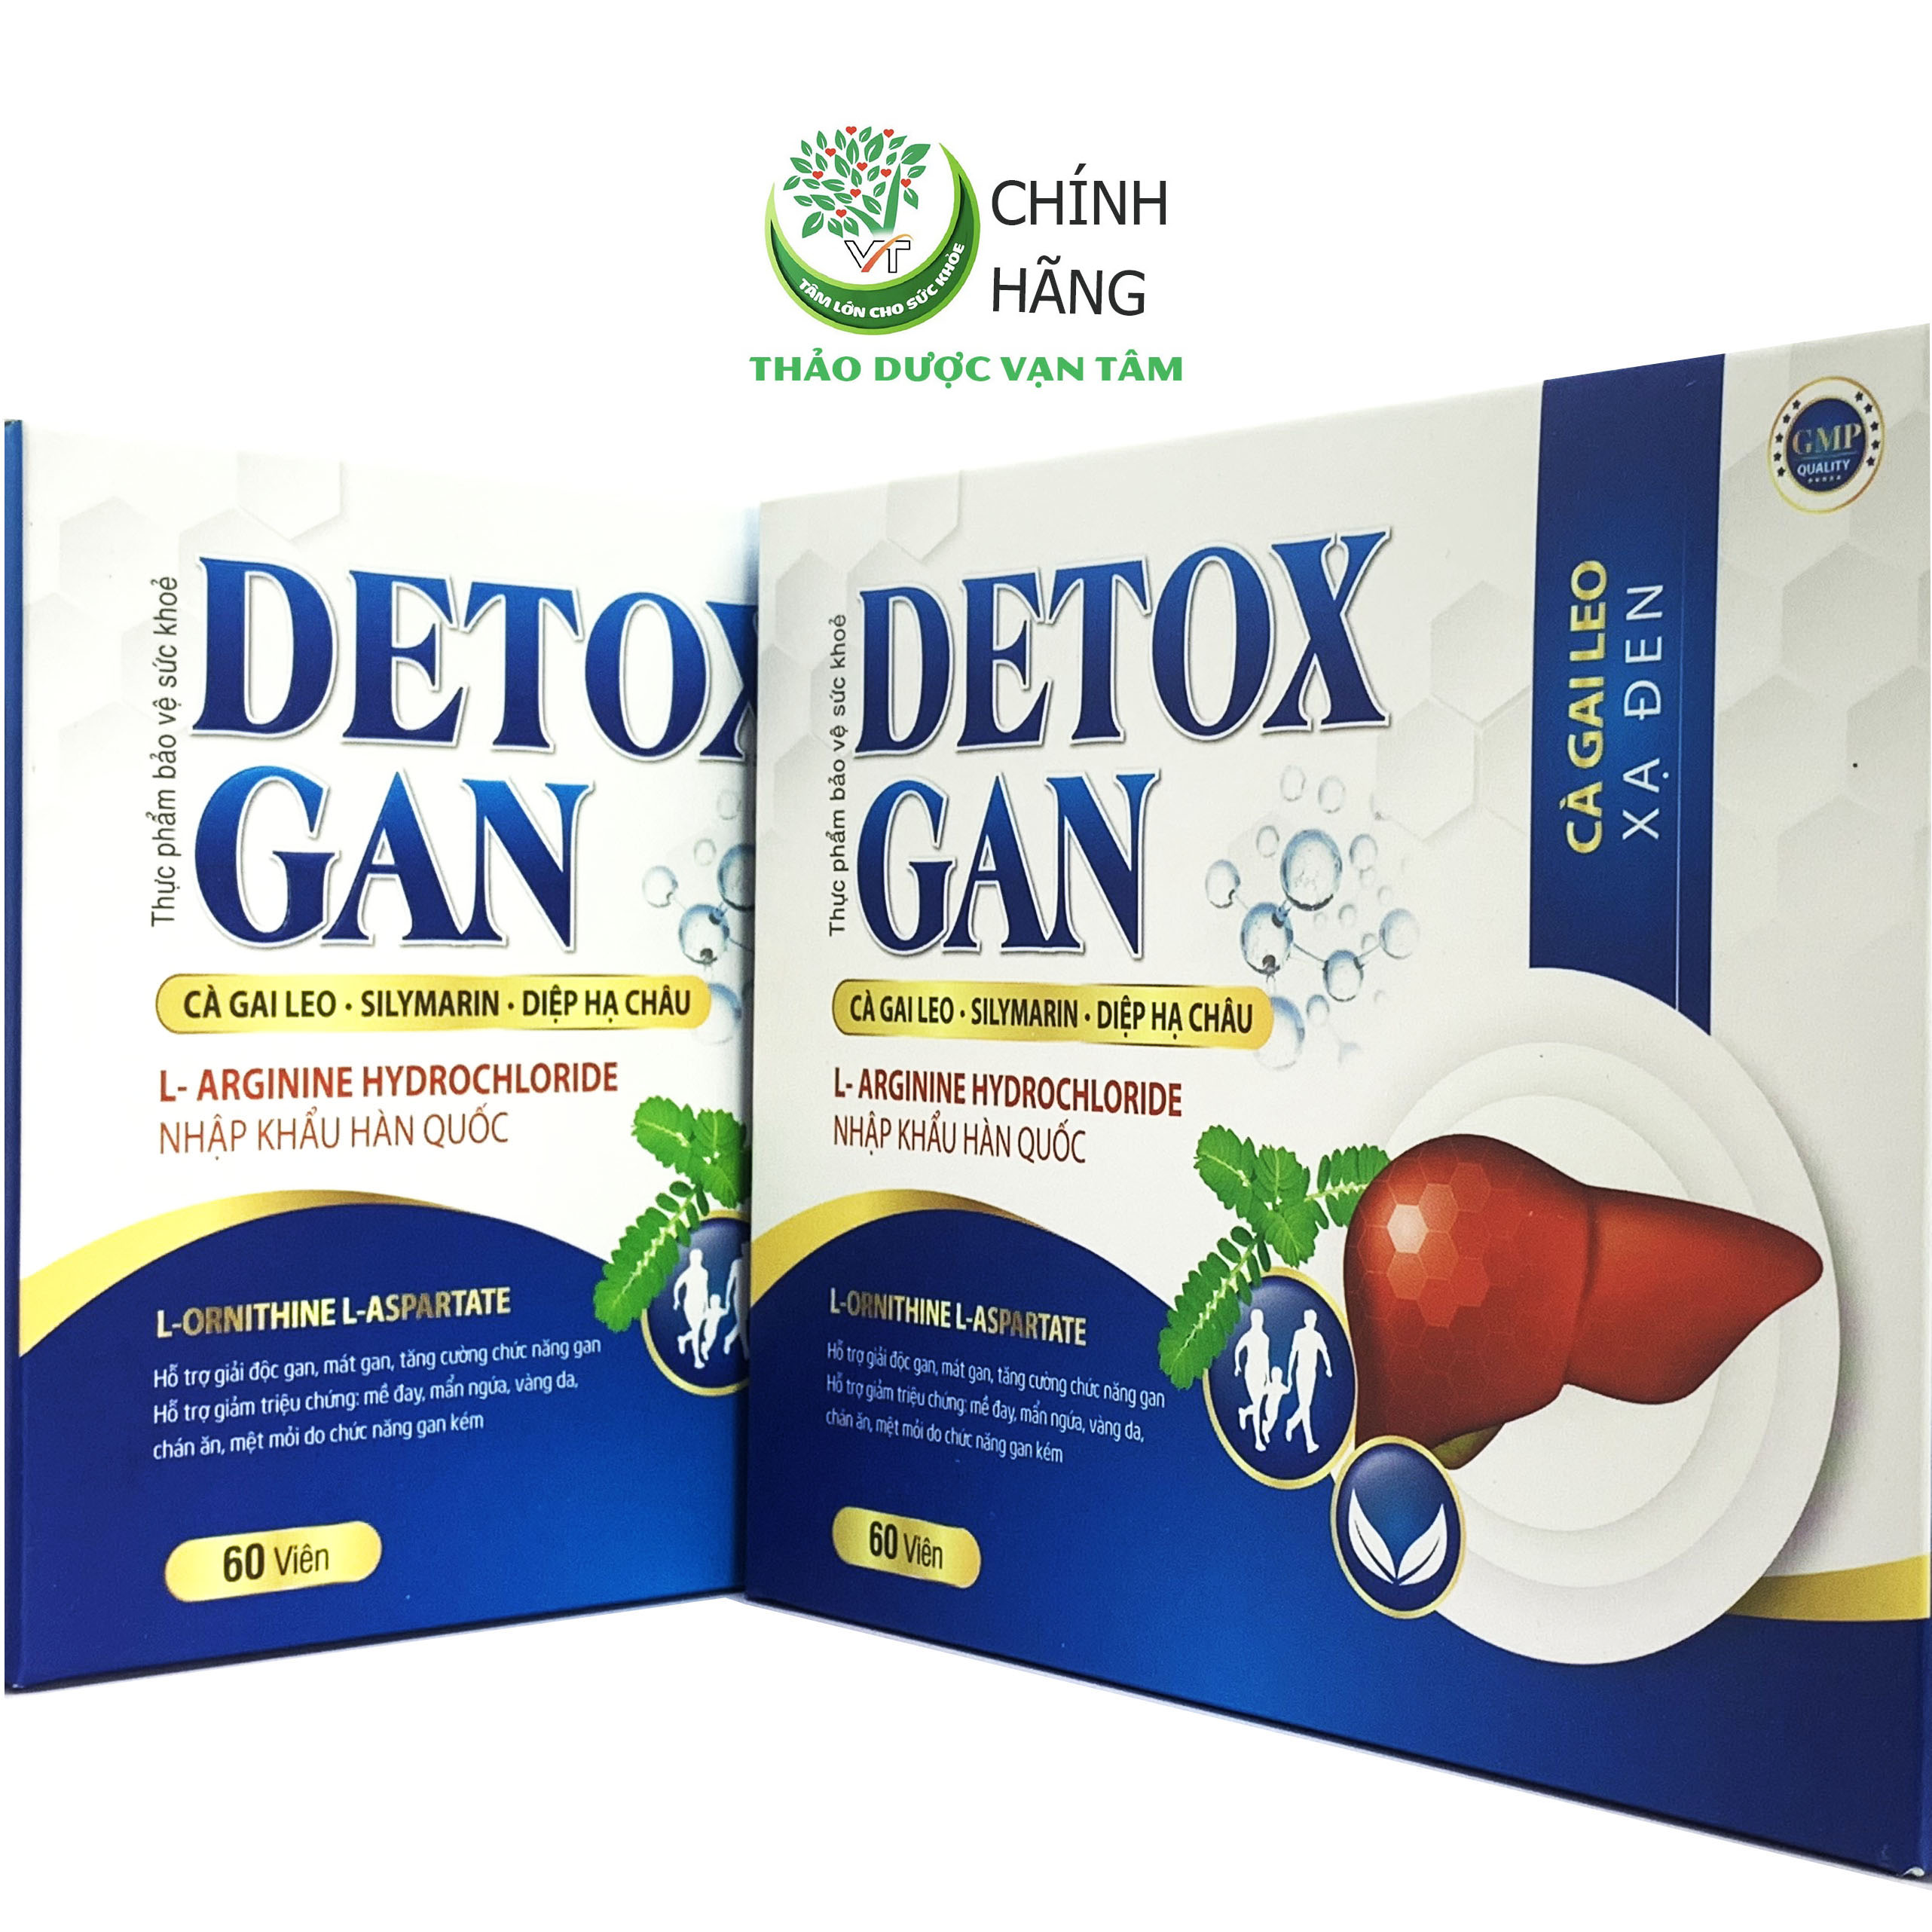 DETOX GAN - Hỗ trợ giải độc gan, mát gan, tăng cường chức năng gan